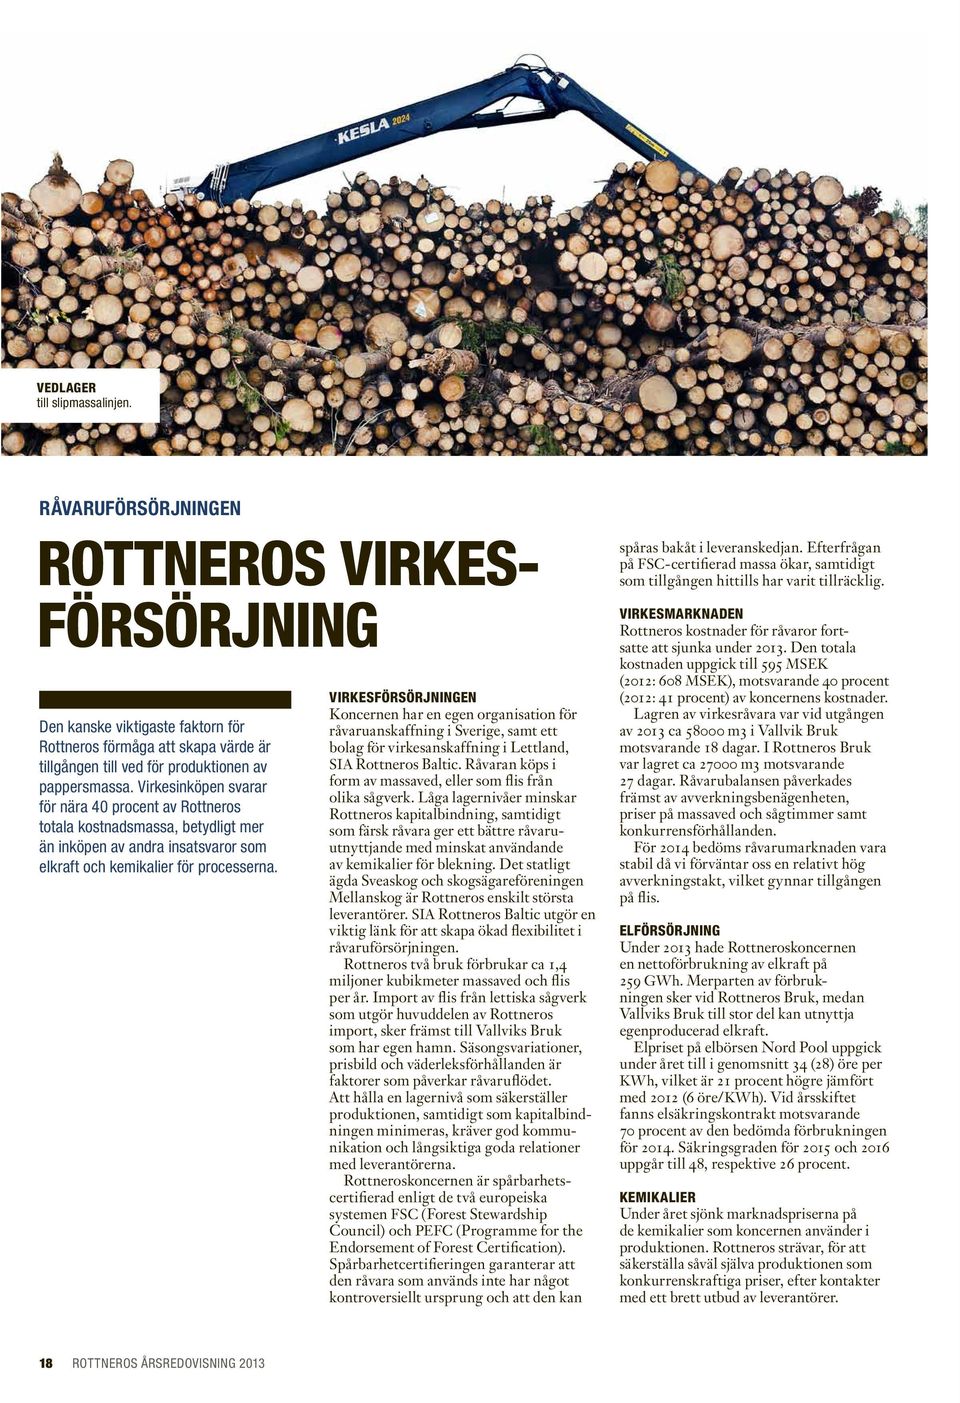 Virkesinköpen svarar för nära 40 procent av Rottneros totala kostnadsmassa, betydligt mer än inköpen av andra insatsvaror som elkraft och kemikalier för processerna.